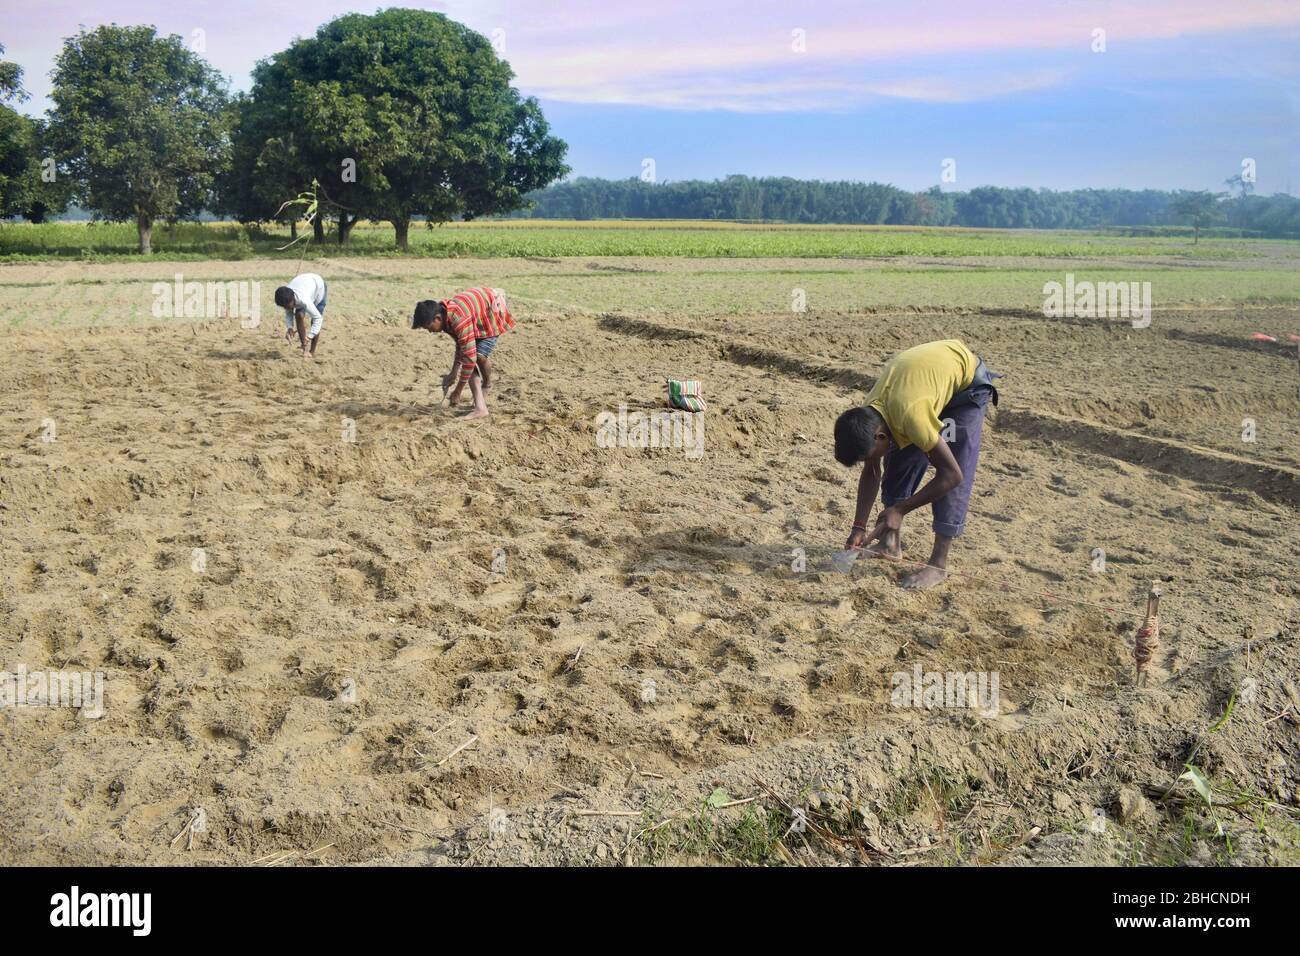 agriculteur indien travaillant dans son domaine. Inde Banque D'Images